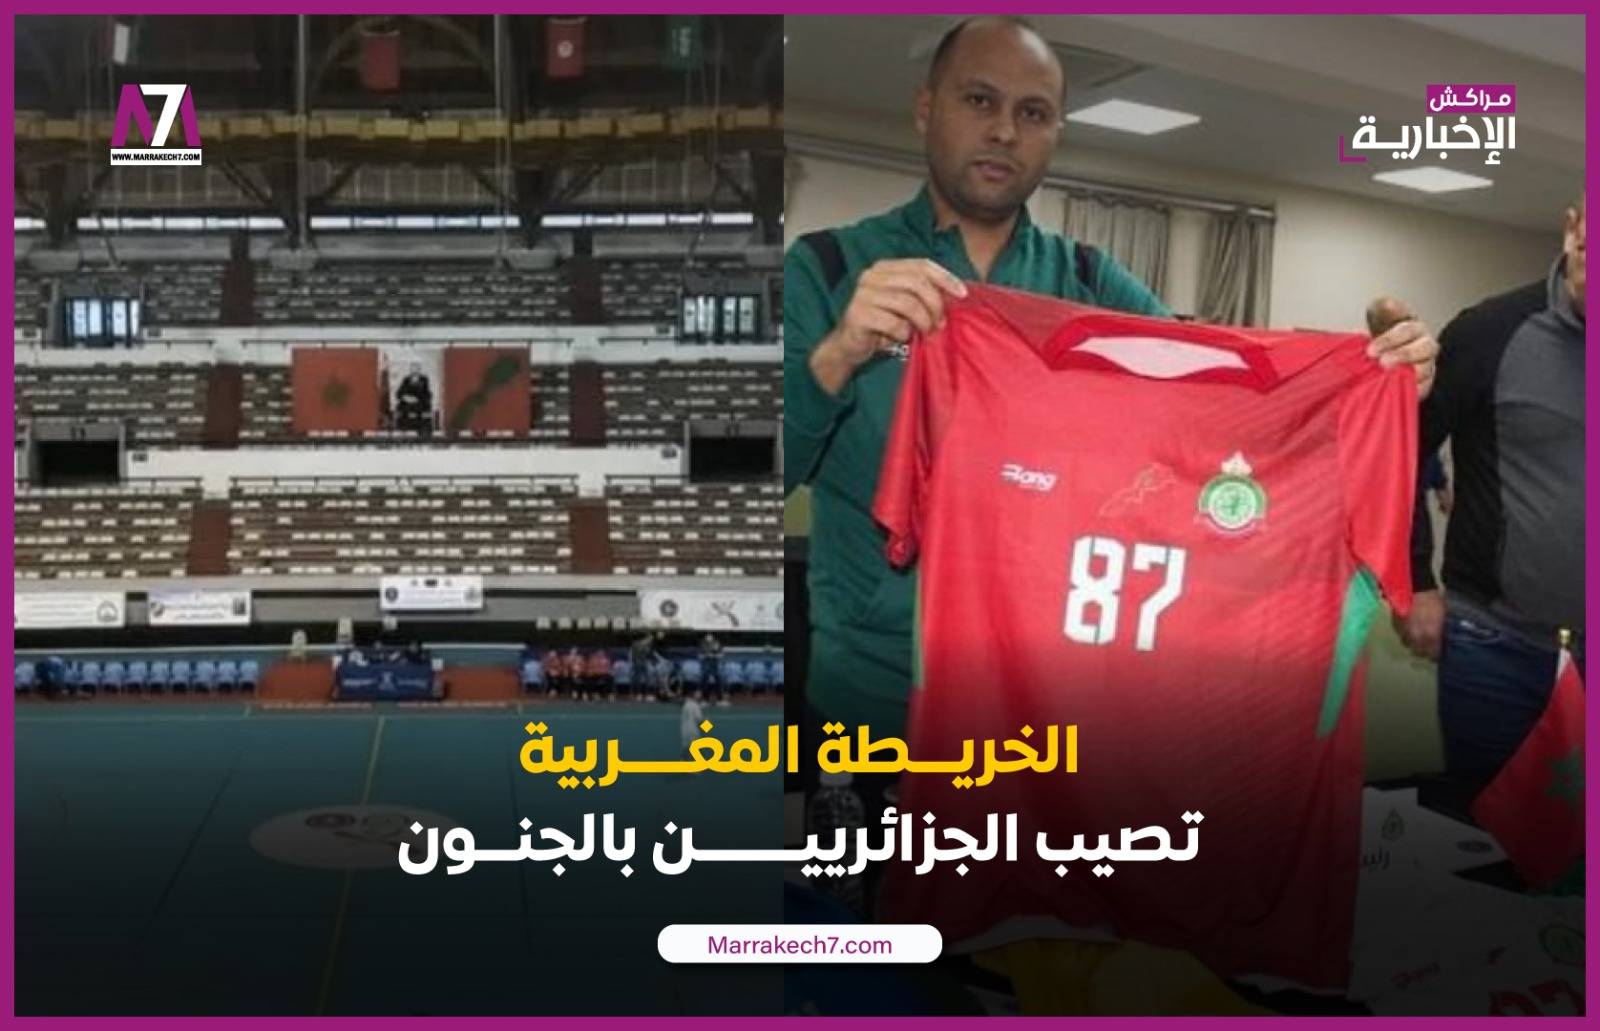 حماقات النظام الجزائري تتواصل..انسحاب جديد من بطولة بسبب خريطة المغرب